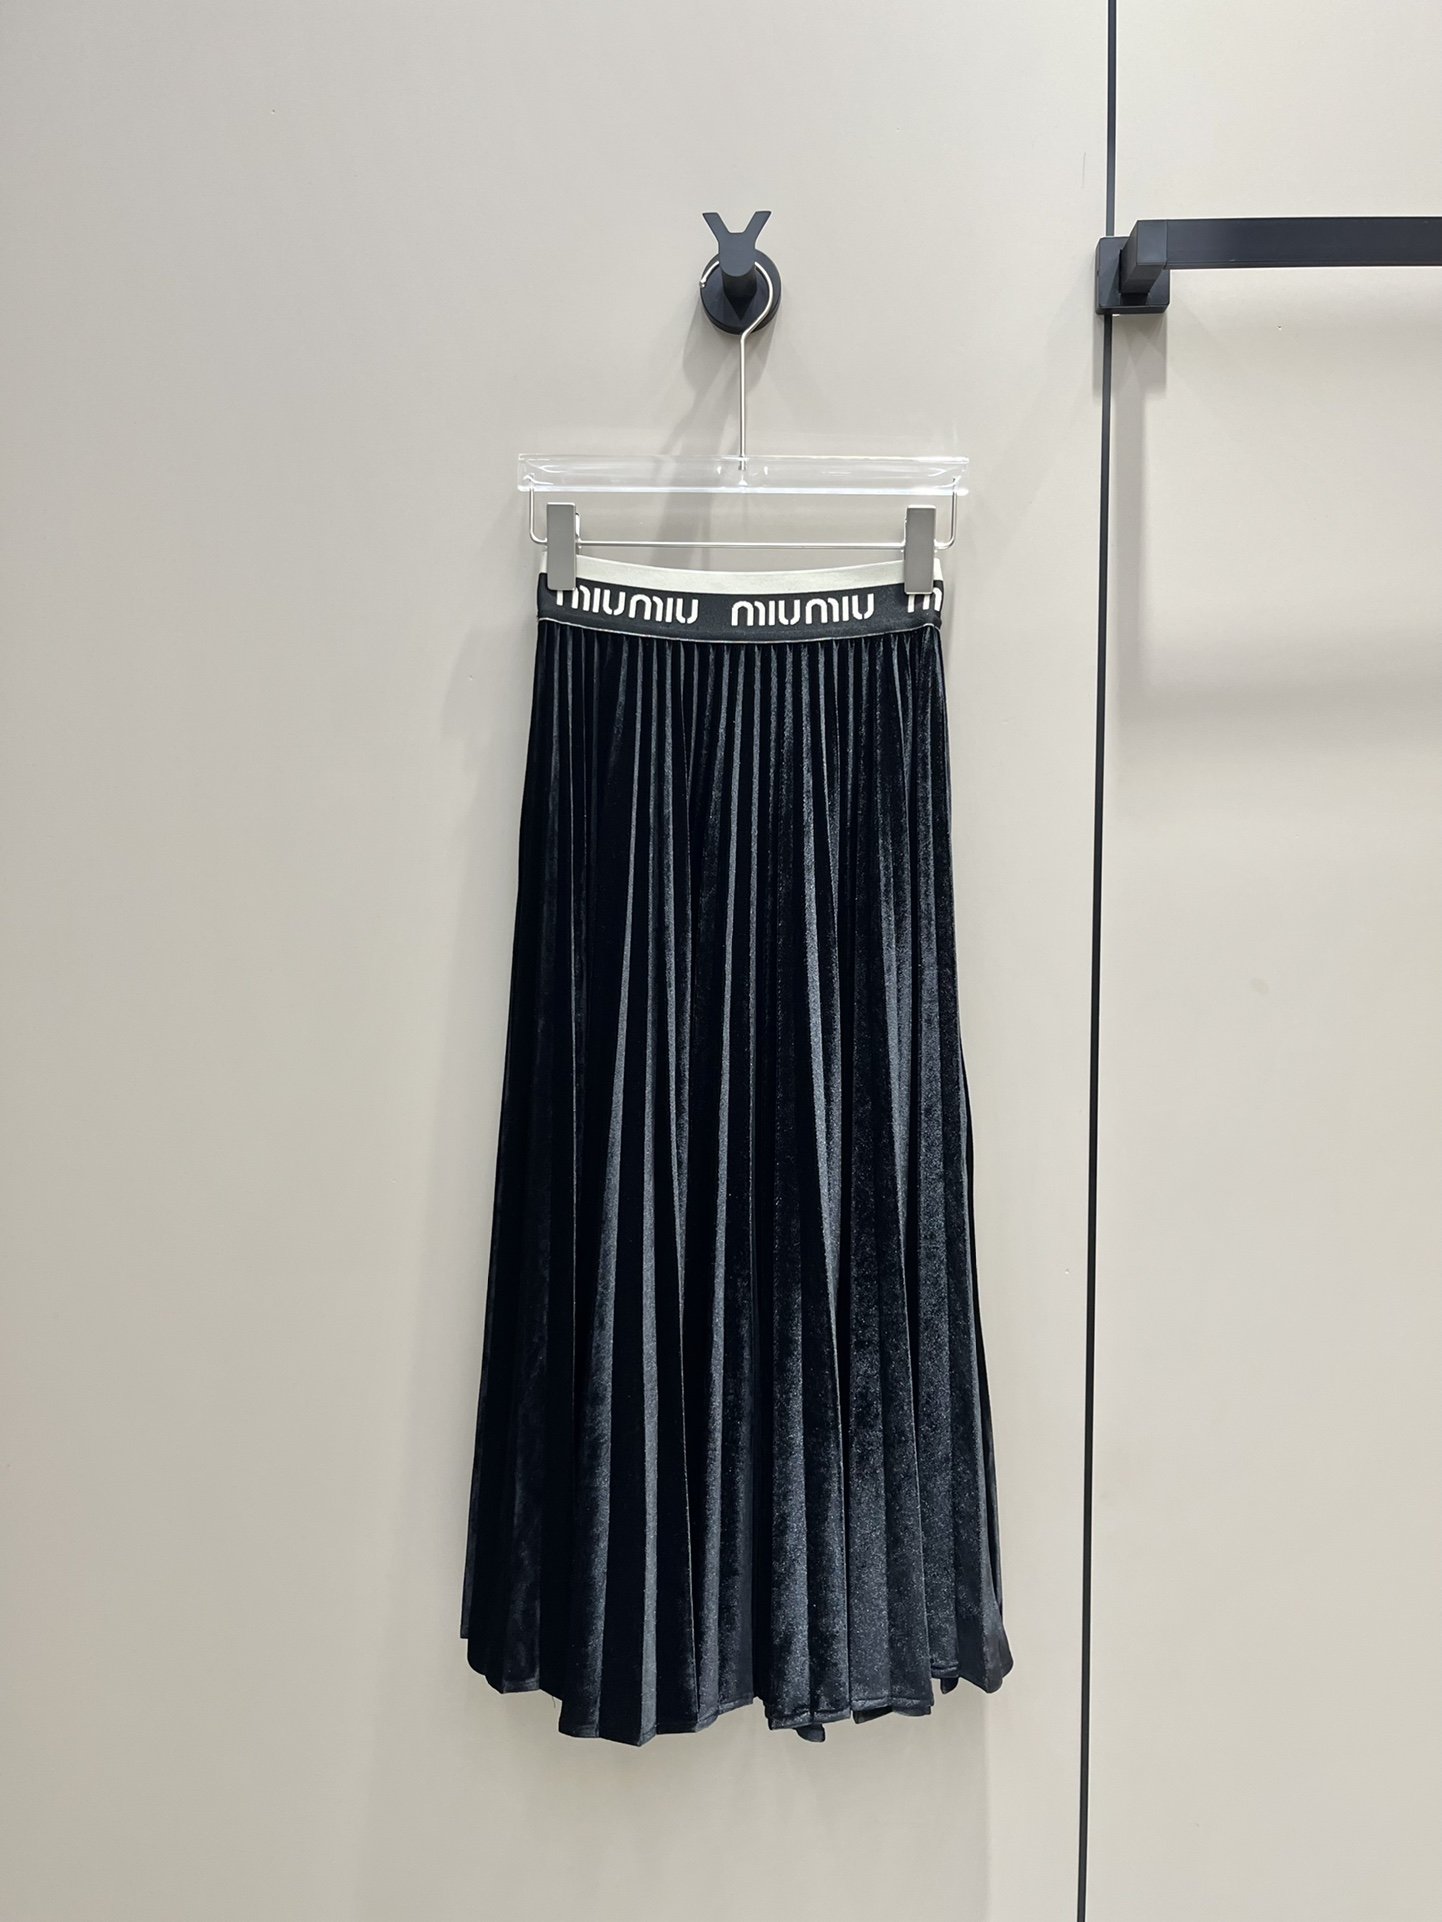 Skirt pleated velvet secondary length фото 7